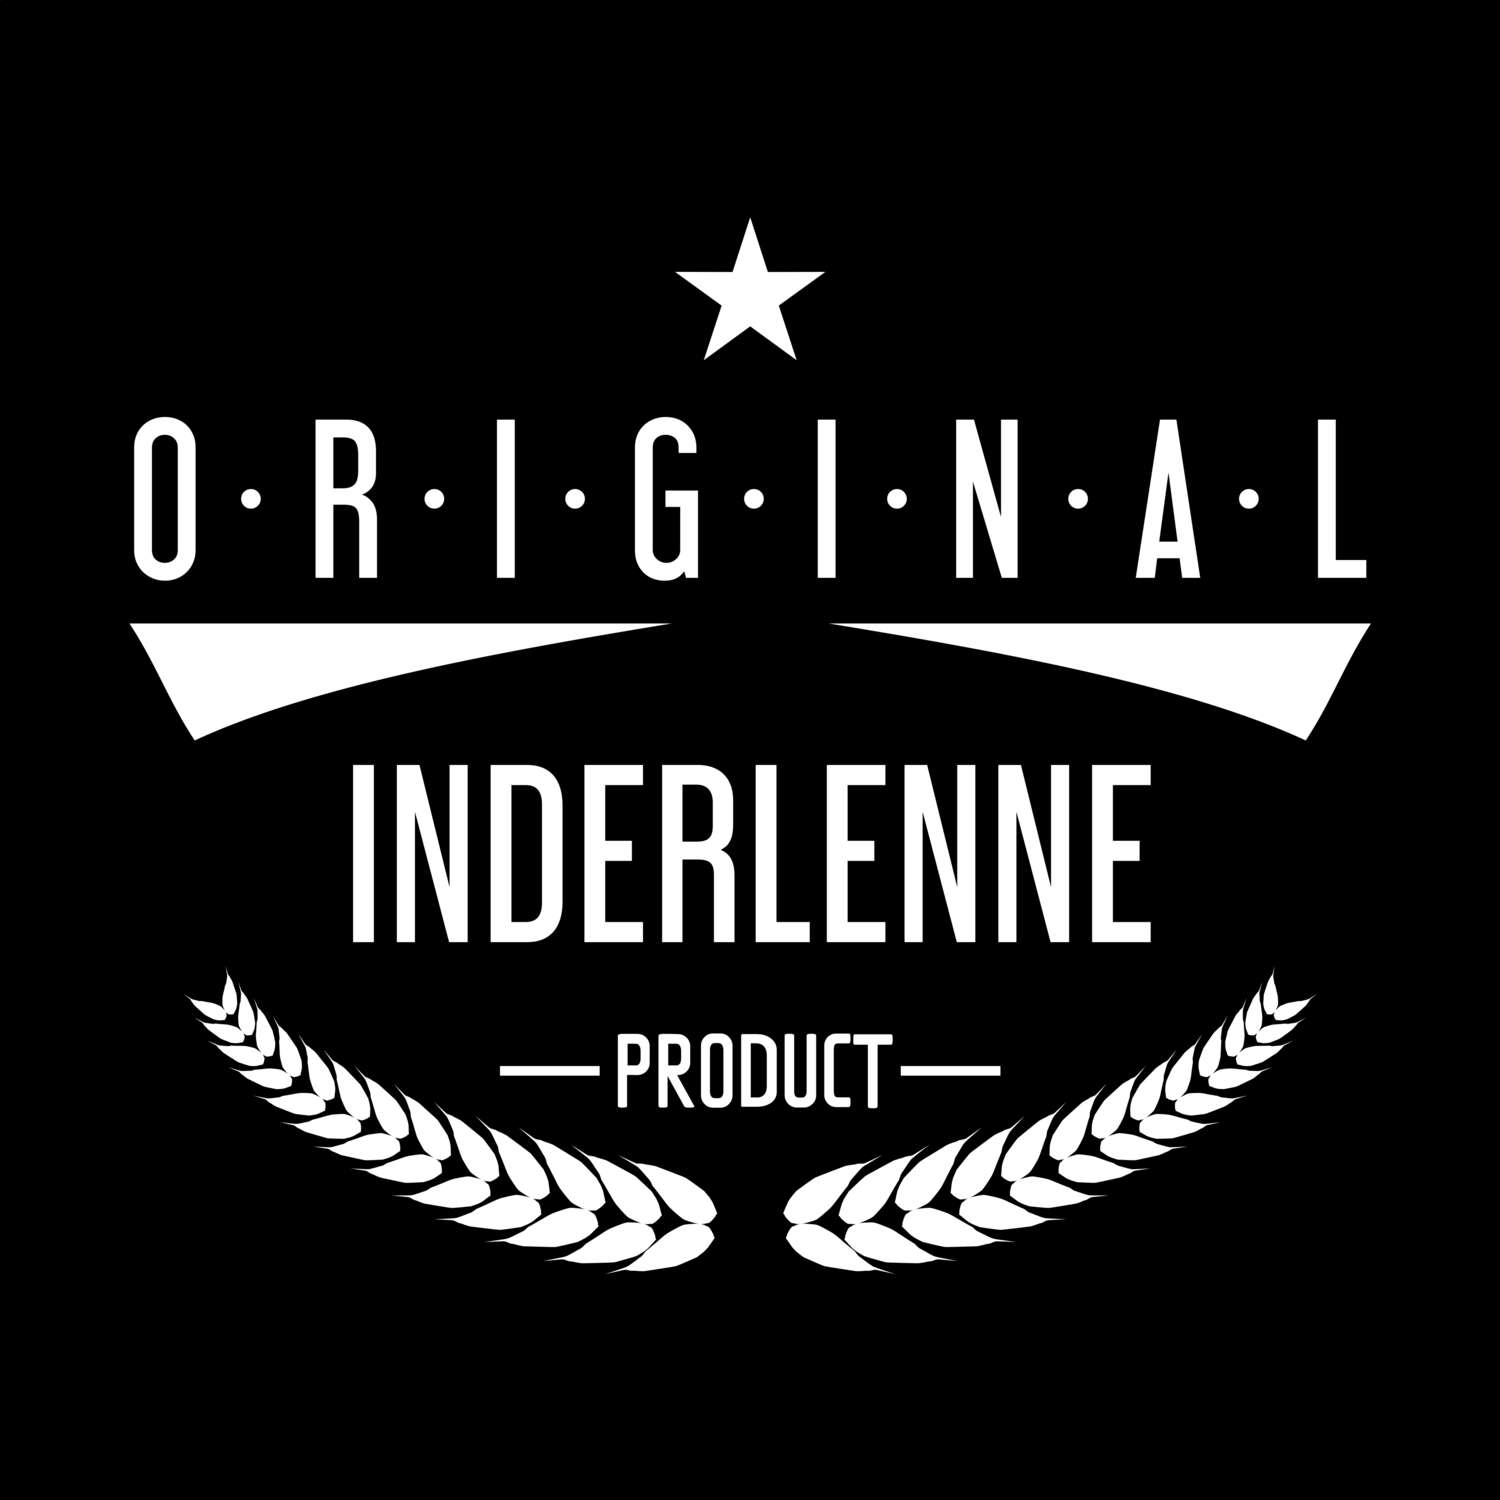 Inderlenne T-Shirt »Original Product«